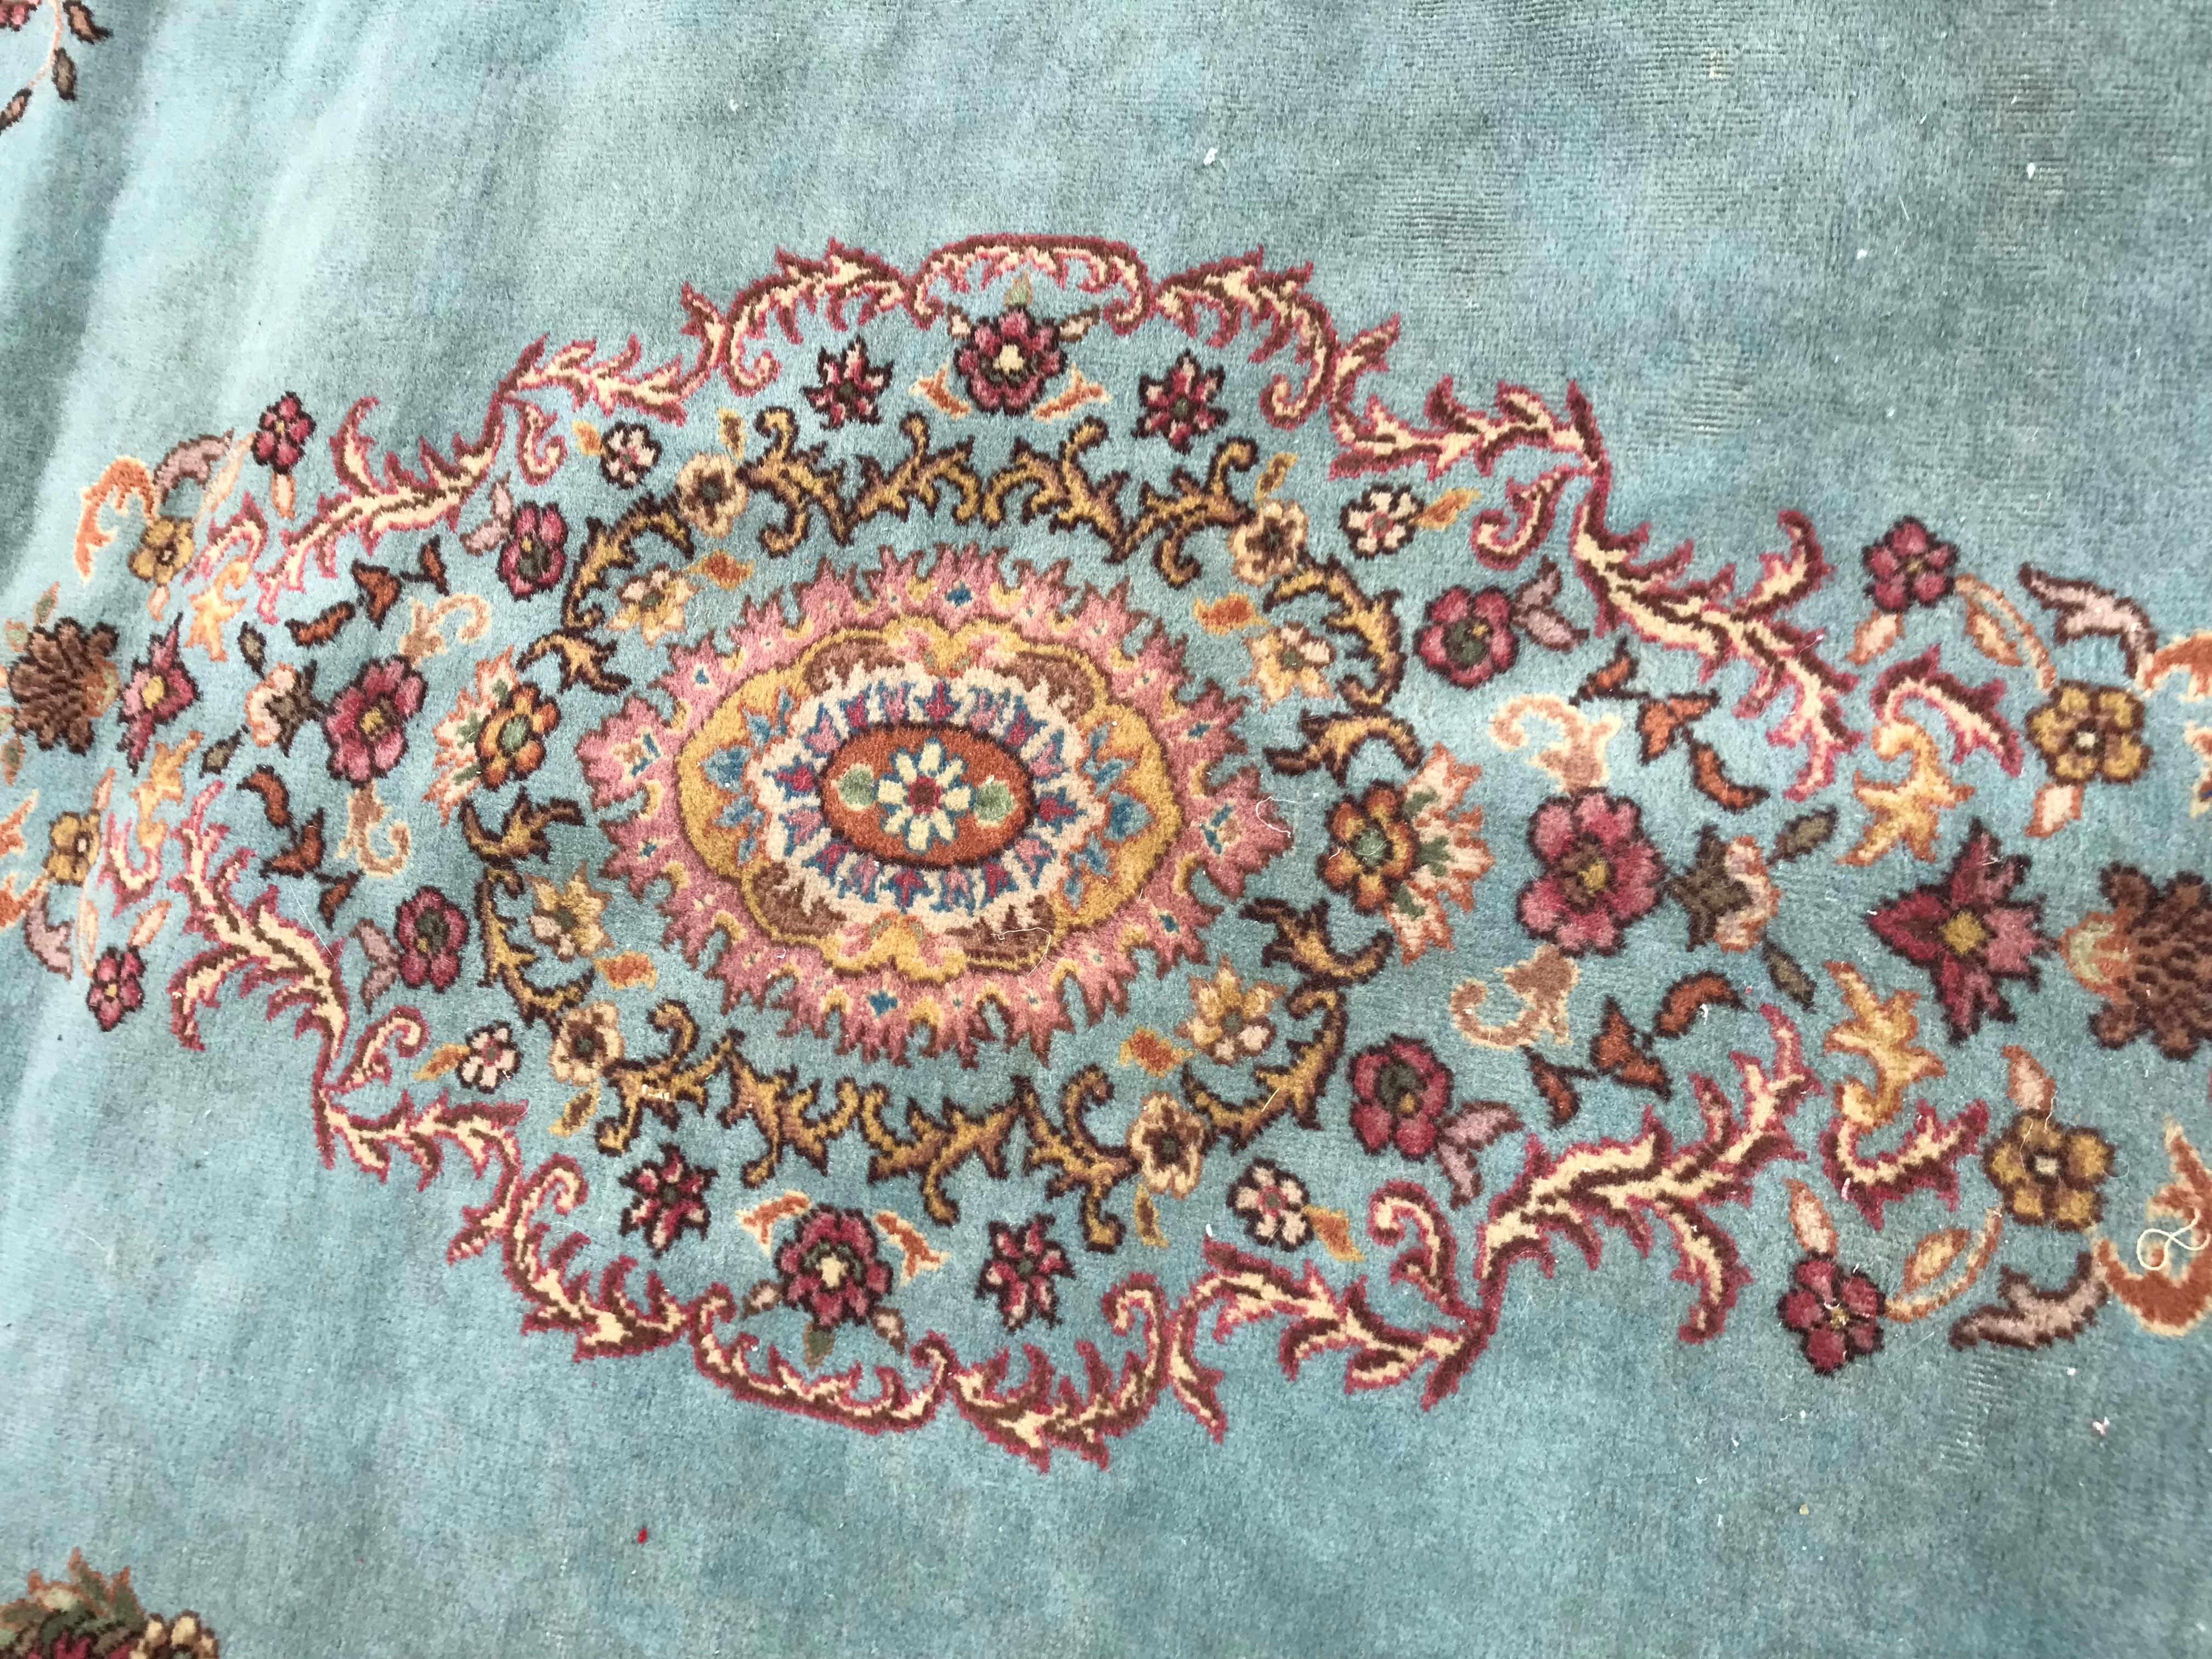 Schöner siebenbürgischer Teppich aus dem 20. Jahrhundert mit schönen Mustern und blauen Feldfarben, sehr dekorativ, komplett handgeknüpft mit Wollsamt auf Baumwollgrund.

✨✨✨
